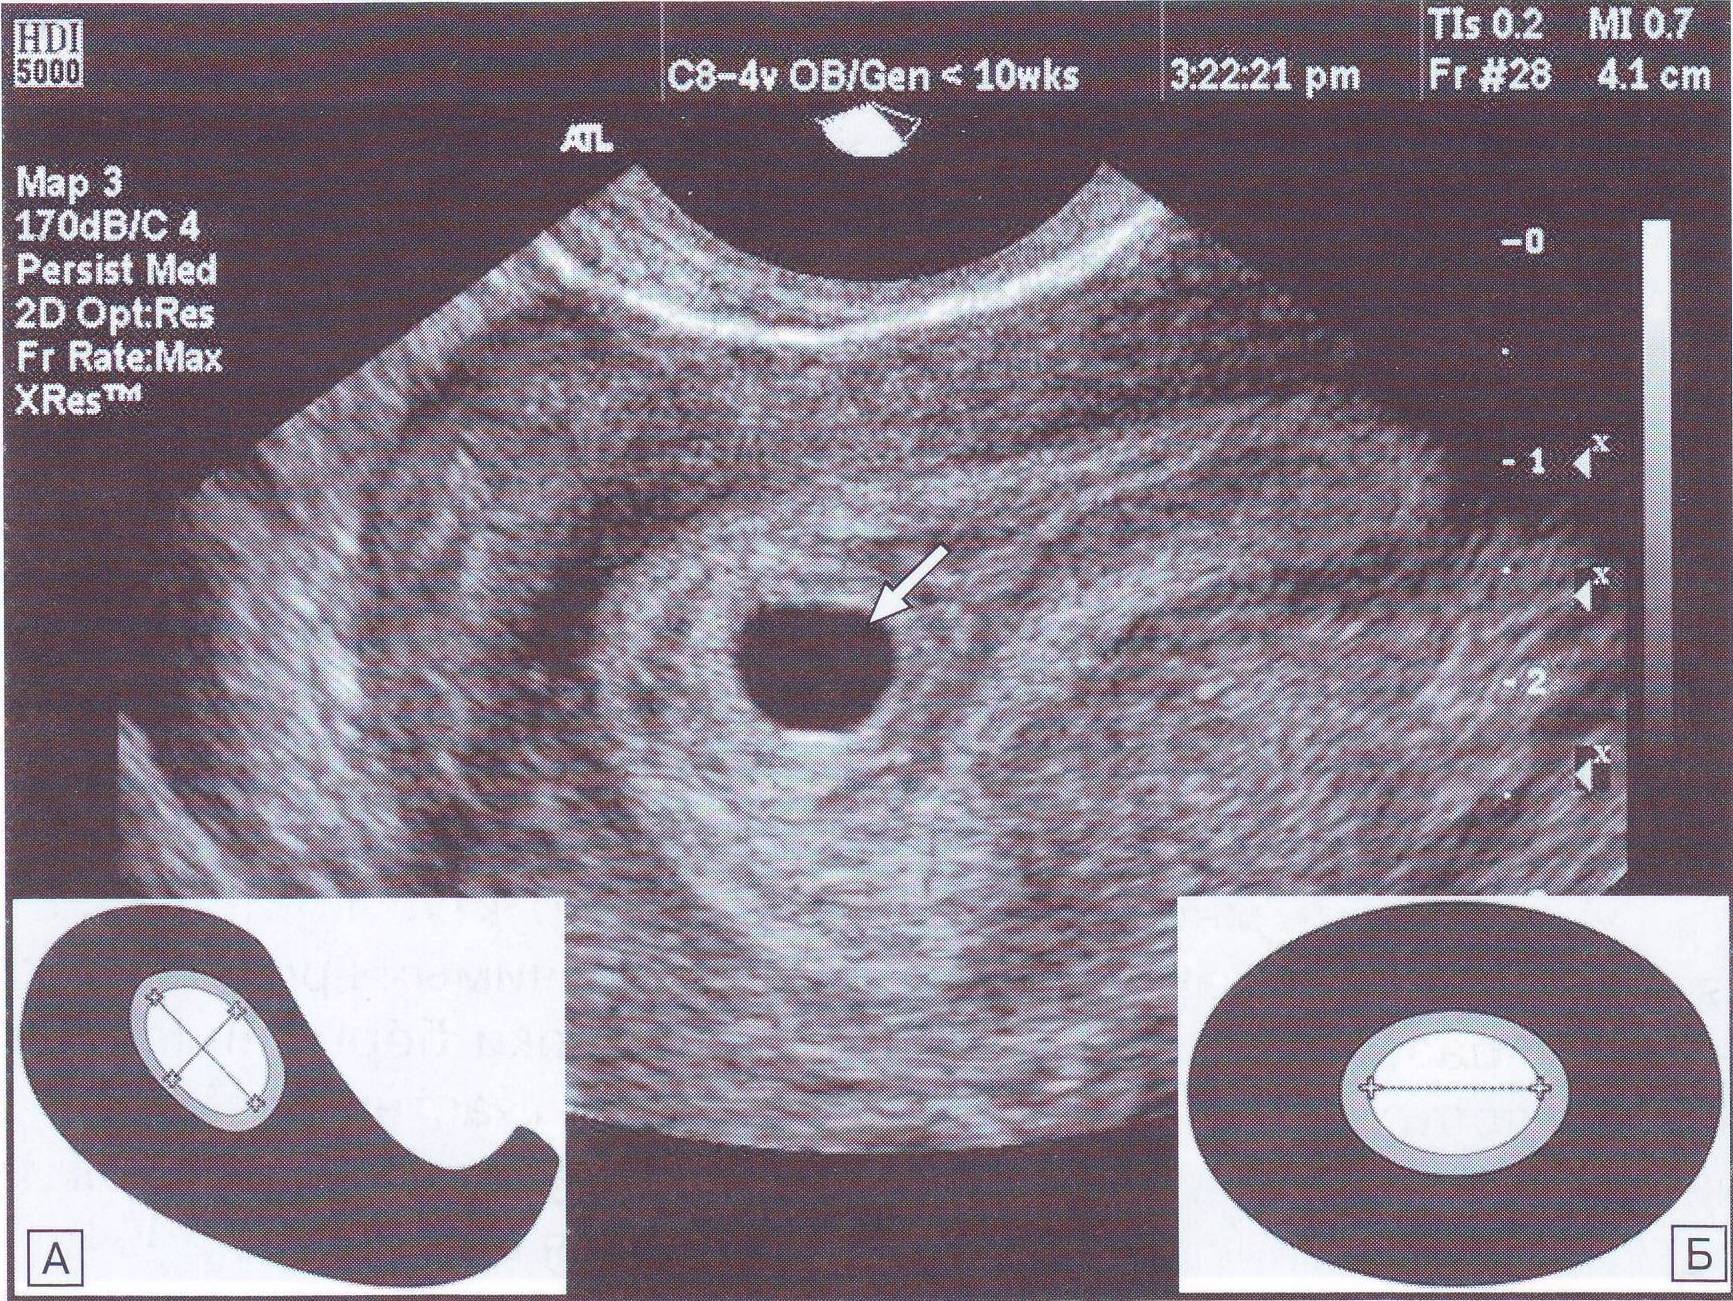 Плодное яйцо 3 мм. УЗИ матки на 5 неделе беременности. Эмбрион на 5 неделе беременности УЗИ. Плодное яйцо по УЗИ 5-6 недель. УЗИ плодное яйцо в полости матки при беременности 5 недель.